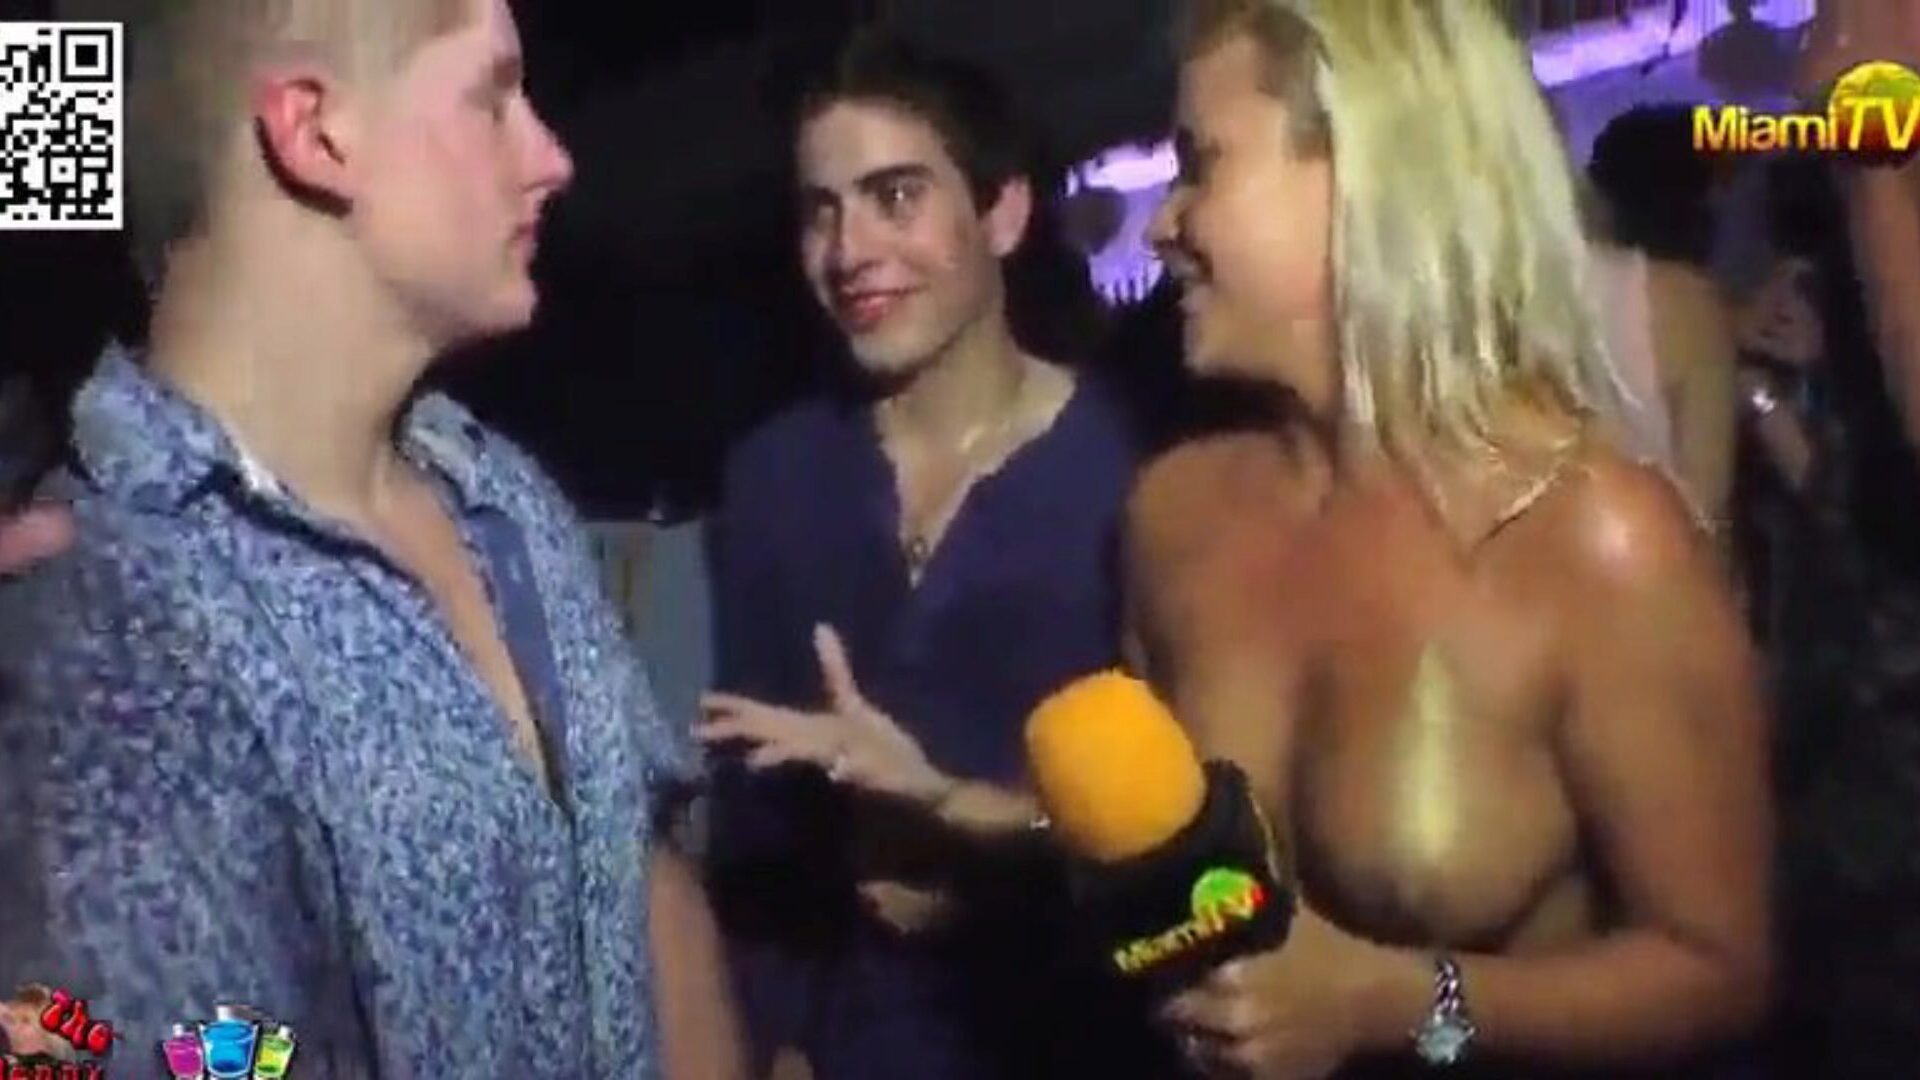 el presentador de televisión acepta apuestas para que lo manipulen 3 presentadores vestidos escasamente le piden a la gente en un club nocturno que la sientan y la besen